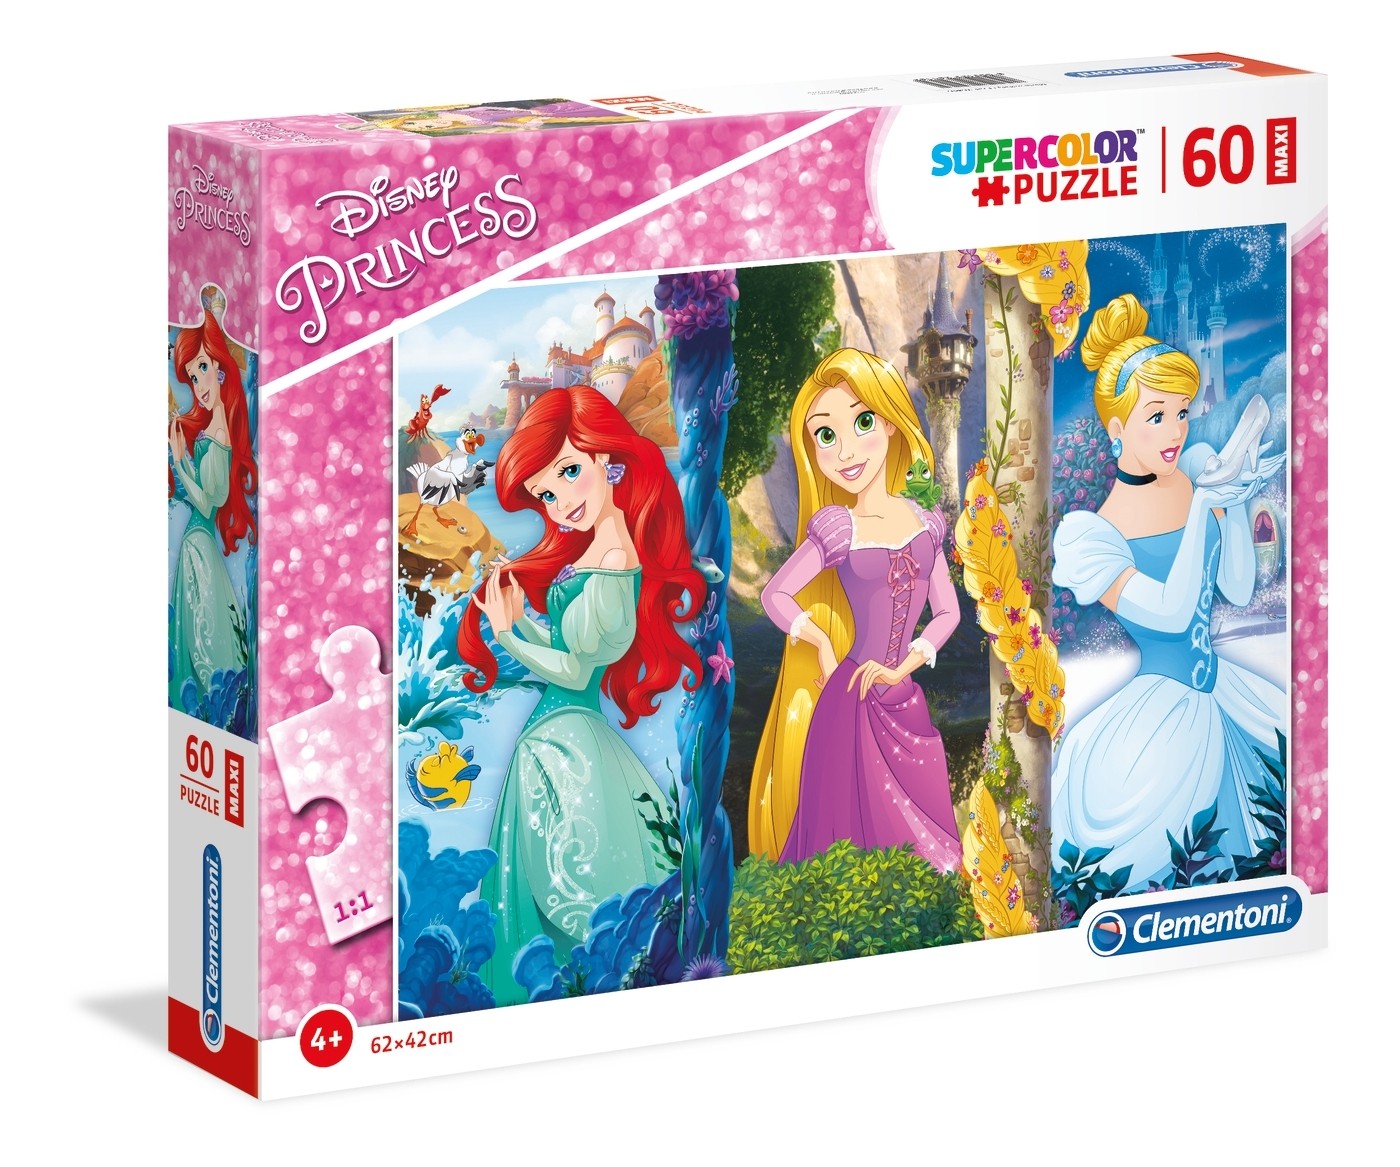 Puzzle Supercolor 60 Pieces Disney Princess Clementoni